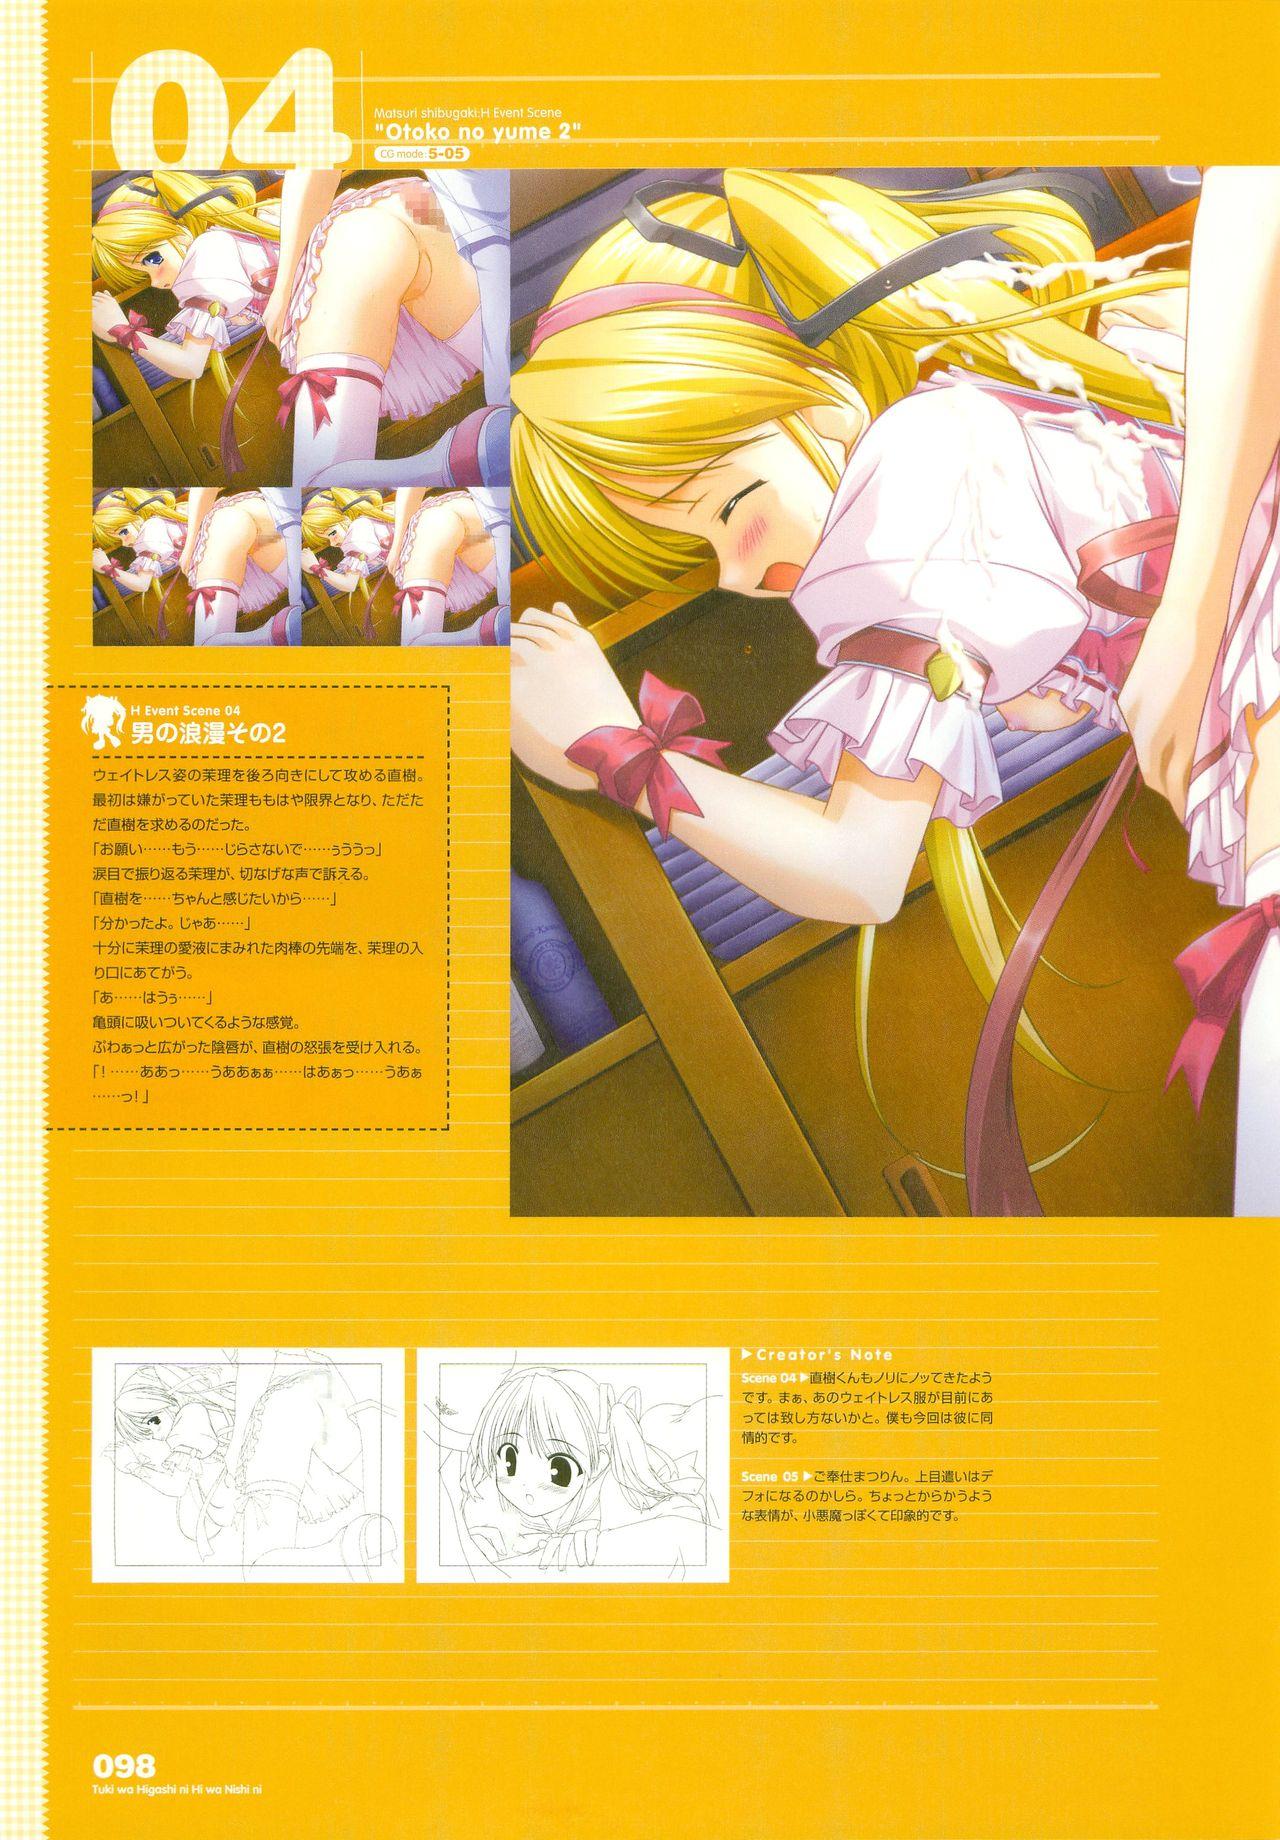 Tsuki wa Higashi ni Hi wa Nishi ni - Operation Sanctuary - Visual Fan Book Shokai Ban 125